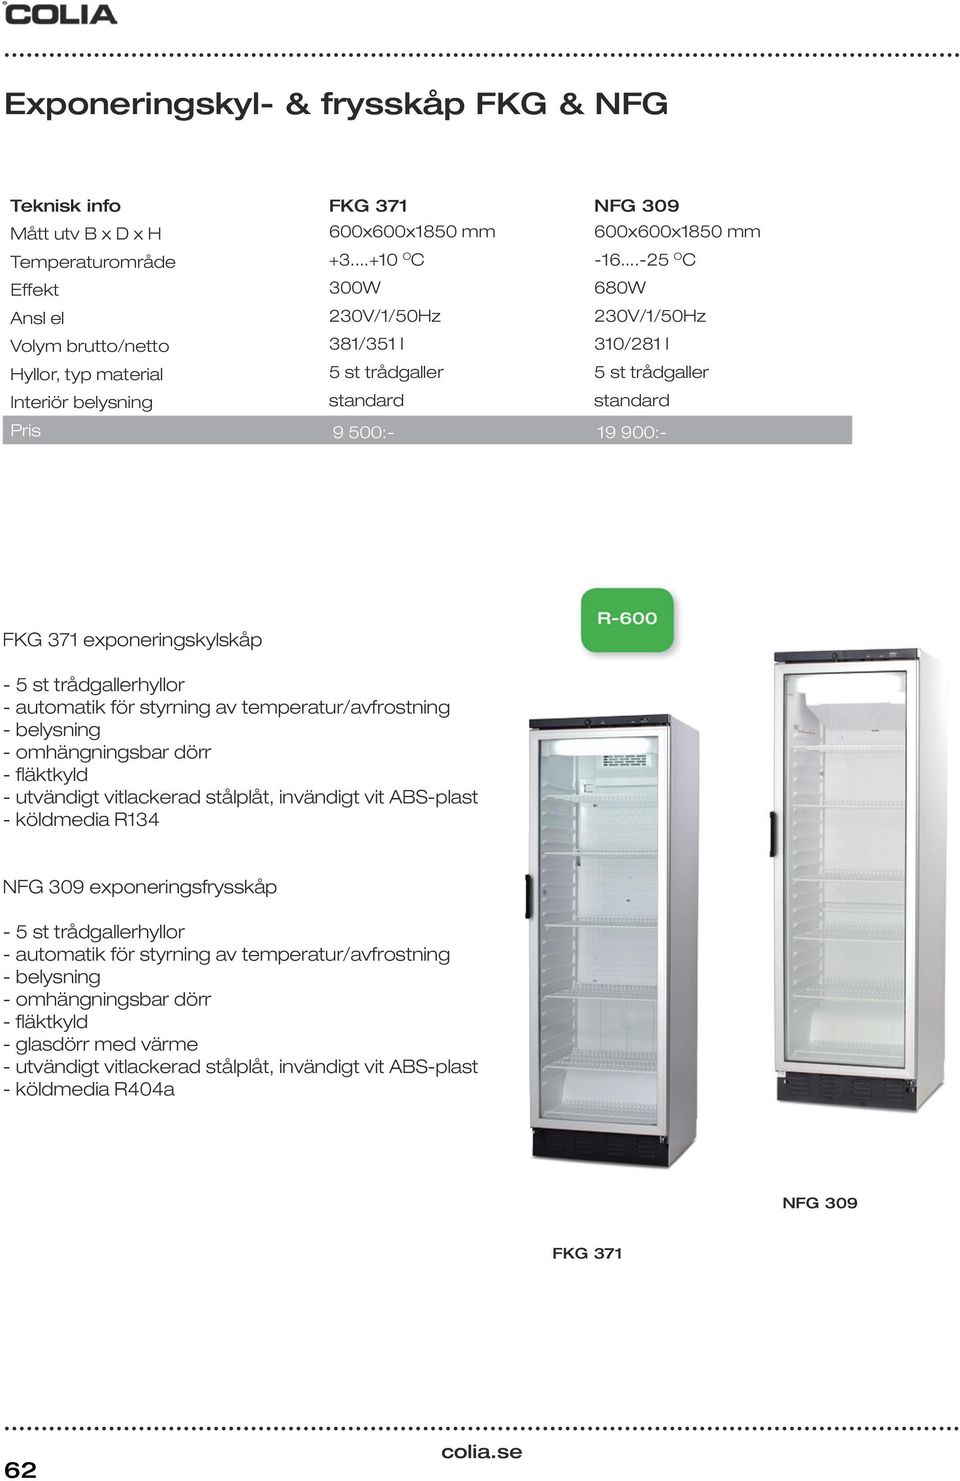 900:- FKG 371 exponeringskylskåp - 5 st trådgallerhyllor - automatik för styrning av temperatur/avfrostning - belysning - omhängningsbar dörr - fläktkyld - utvändigt vitlackerad stålplåt, invändigt